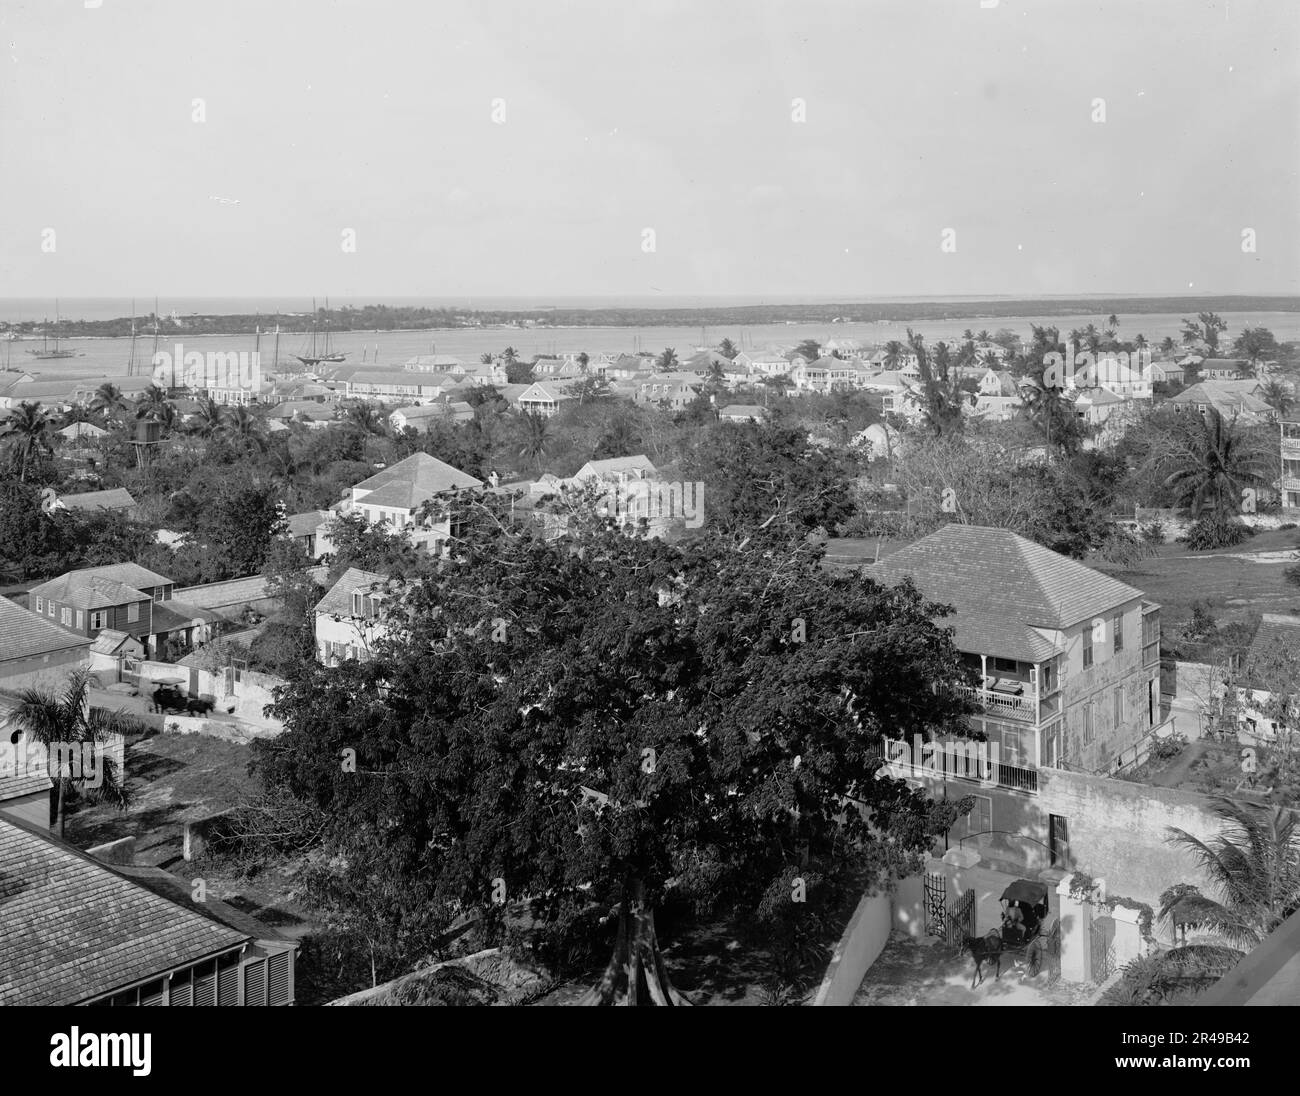 Nassau von der Royal Victoria, Bahama-Inseln, W.I., zwischen 1900 und 1906. Stockfoto